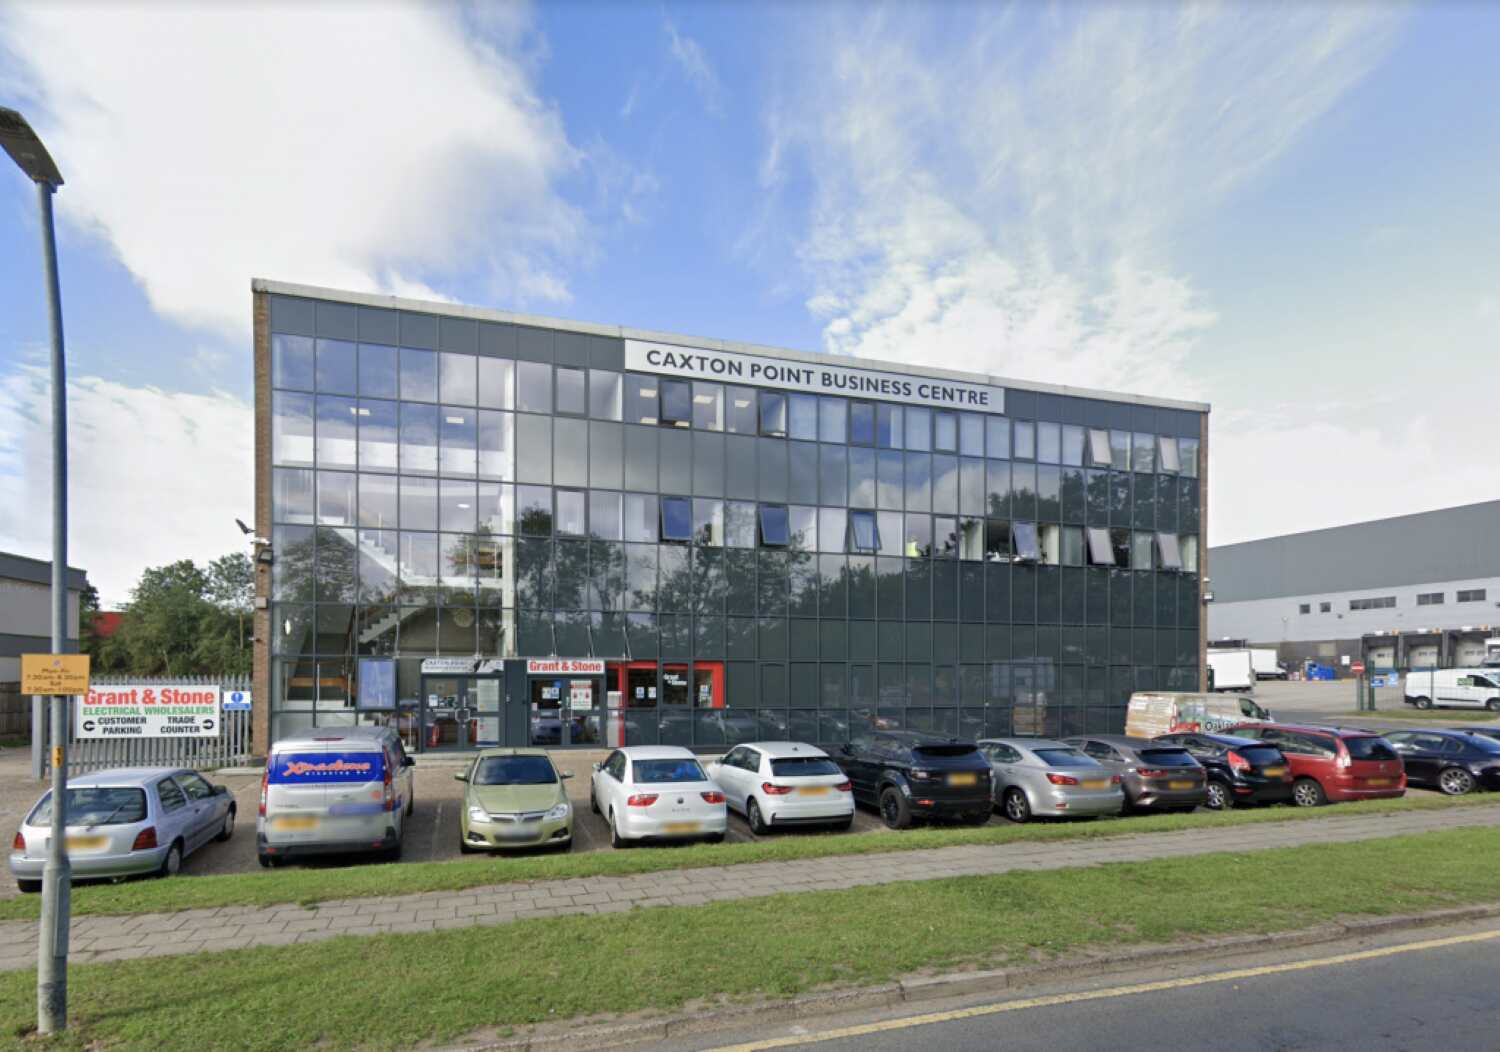 Caxton Point Business Centre, Stevenage